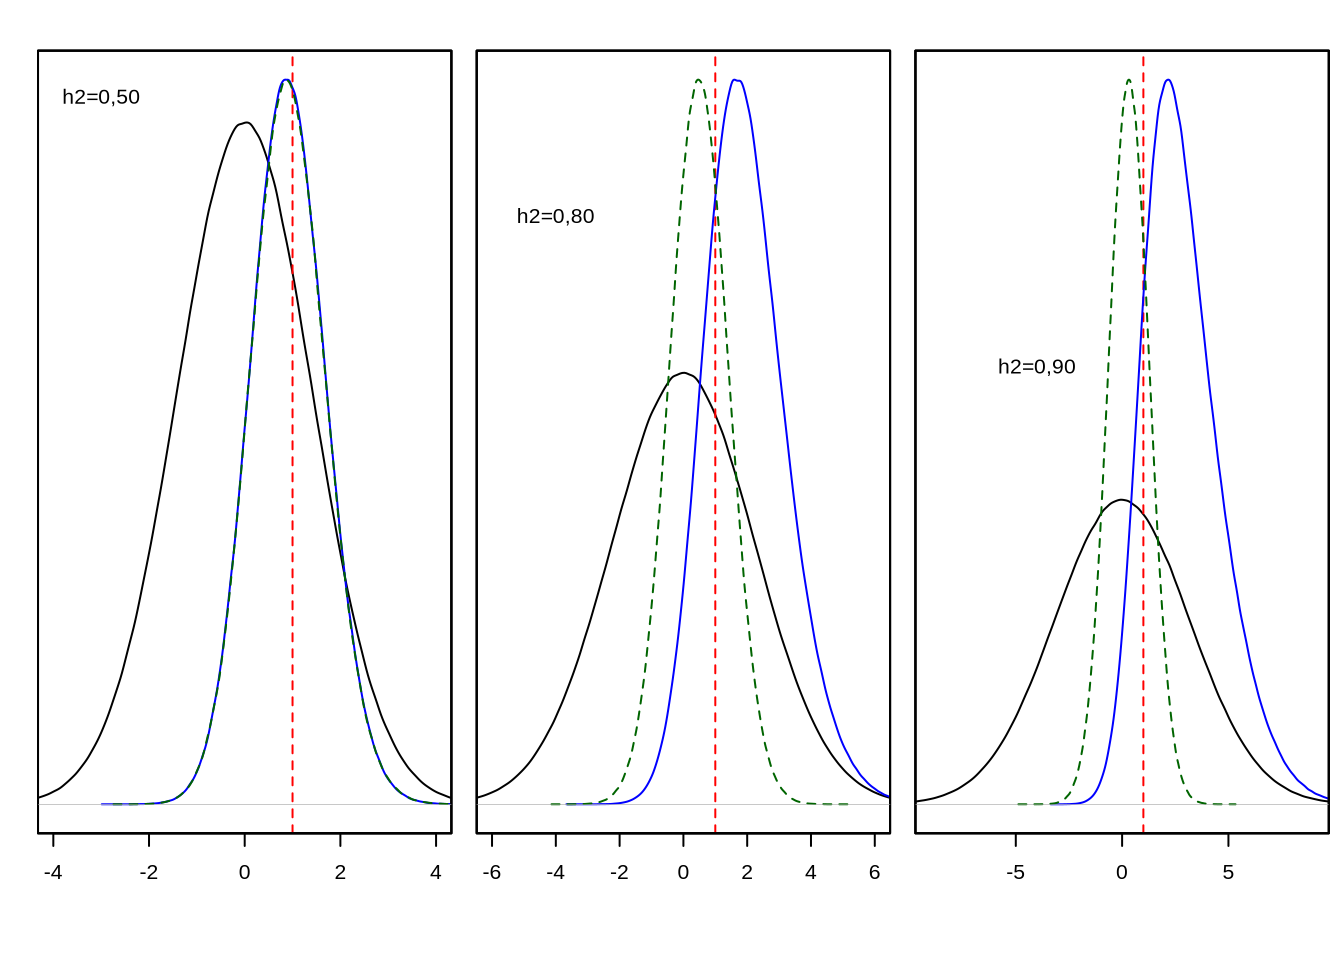 Distribución fenotípica de la población (en negro), de los fenotipos seleccionados como reproductores (área rayada en rojo) y de los genotipos seleccionados (azul), así como de los efectos ambientales (verde) en los individuos seleccionados. De izquierda a derecha, heredabilidades de \(h^2=0,50\), \(h^2=0,80\) y \(h^2=0,90\). Se aprecia claramente que pese a que la selección es por truncamiento en los fenotipos, los genotipos de los individuos seleccionados se distribuyen en casi todo el continuo de valores y con una distribución aproximadamente normal a heredabilidades no demasiado altas.